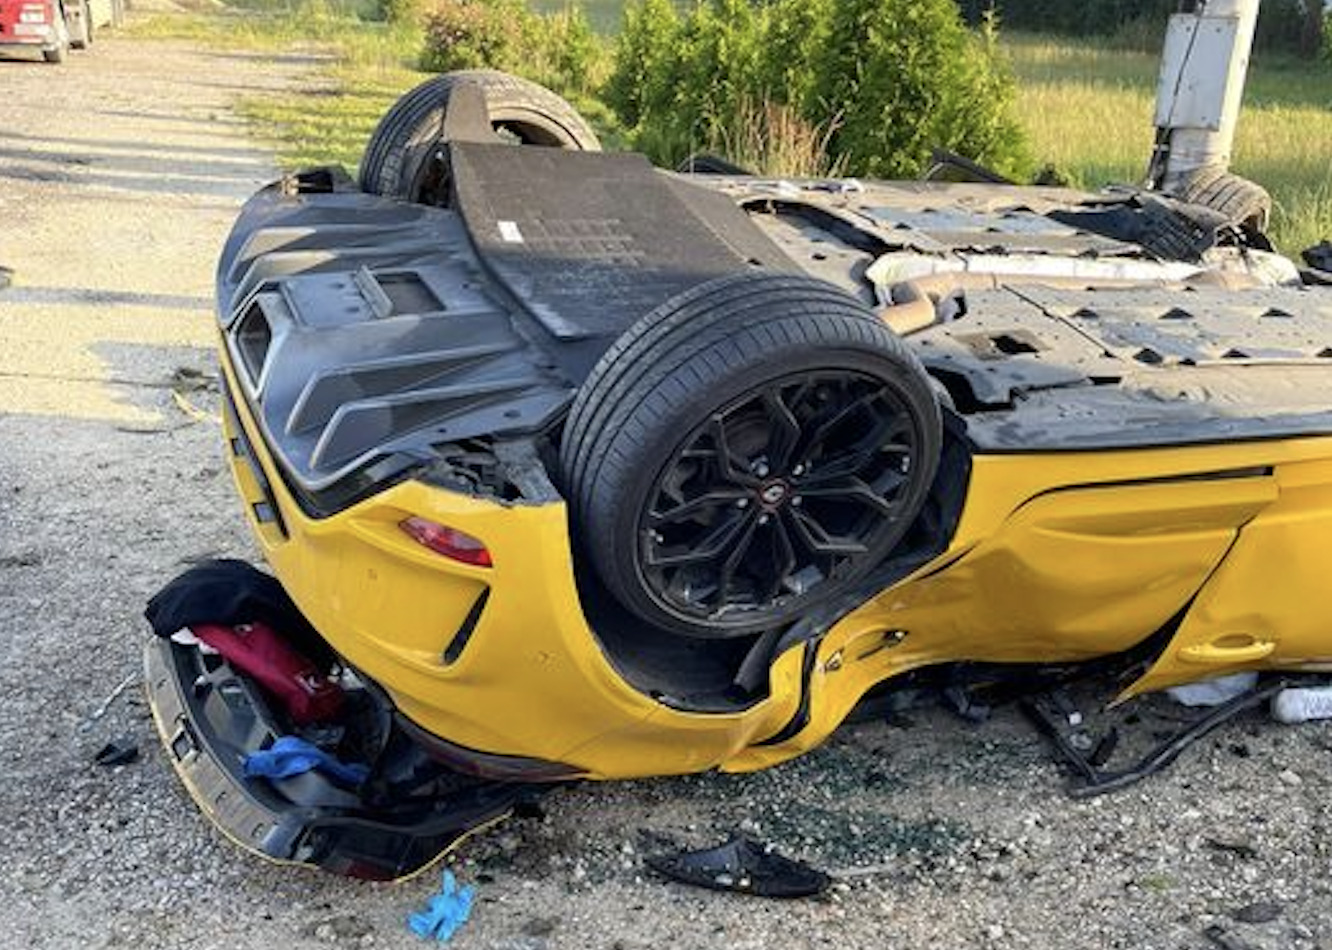 Trzy osoby zginęły wskutek dachowania żółtego, sportowego Renault. Tragedia w Małopolsce to wiadomość z dzisiaj